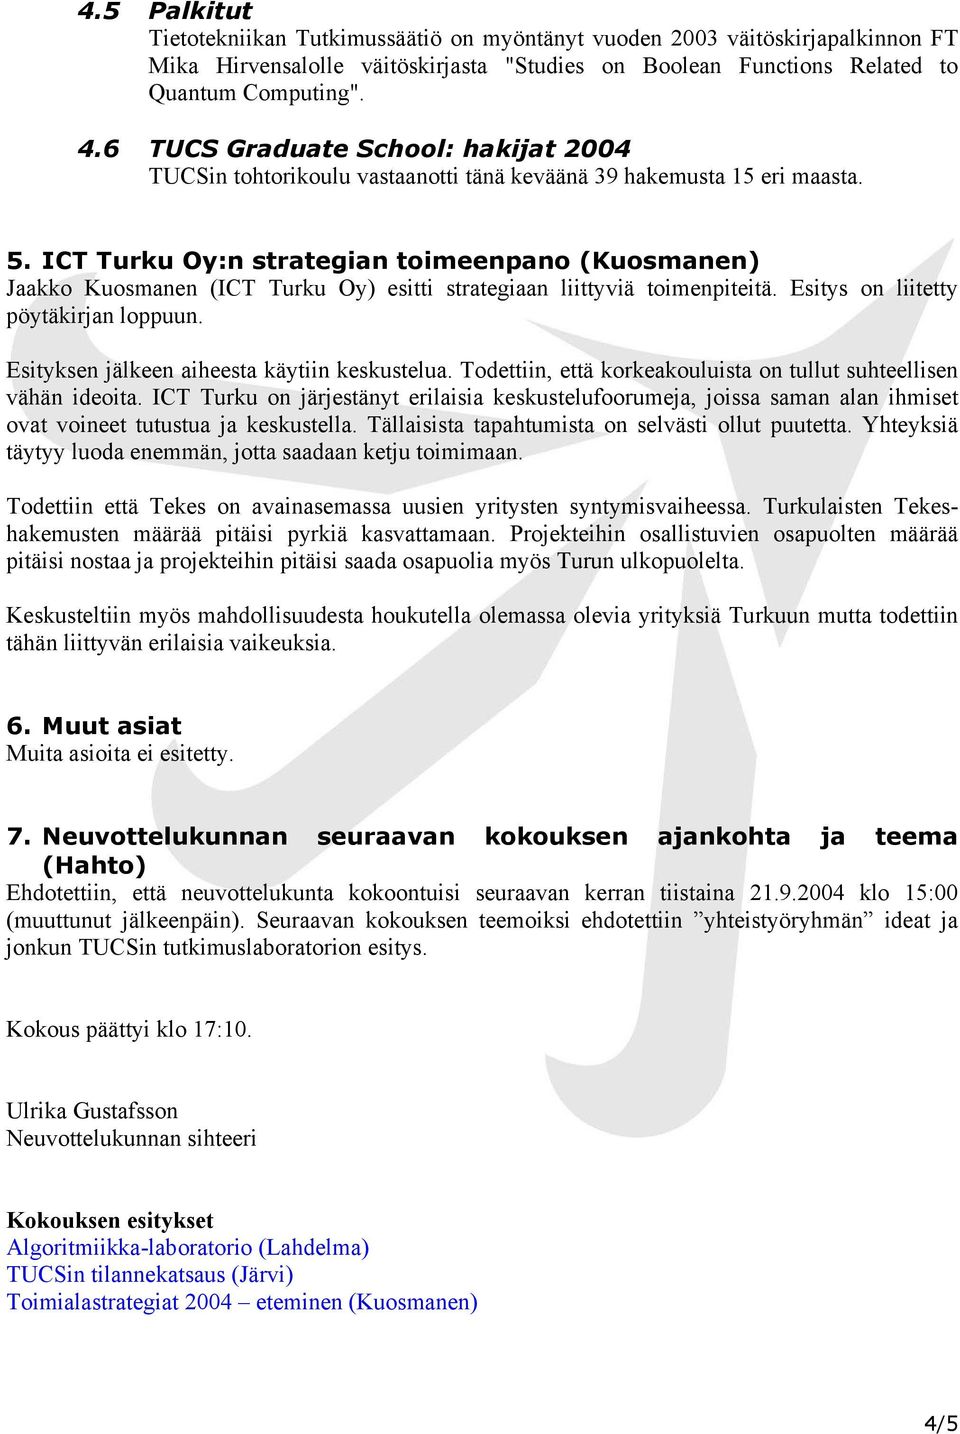 ICT Turku Oy:n strategian toimeenpano (Kuosmanen) Jaakko Kuosmanen (ICT Turku Oy) esitti strategiaan liittyviä toimenpiteitä. Esitys on liitetty pöytäkirjan loppuun.